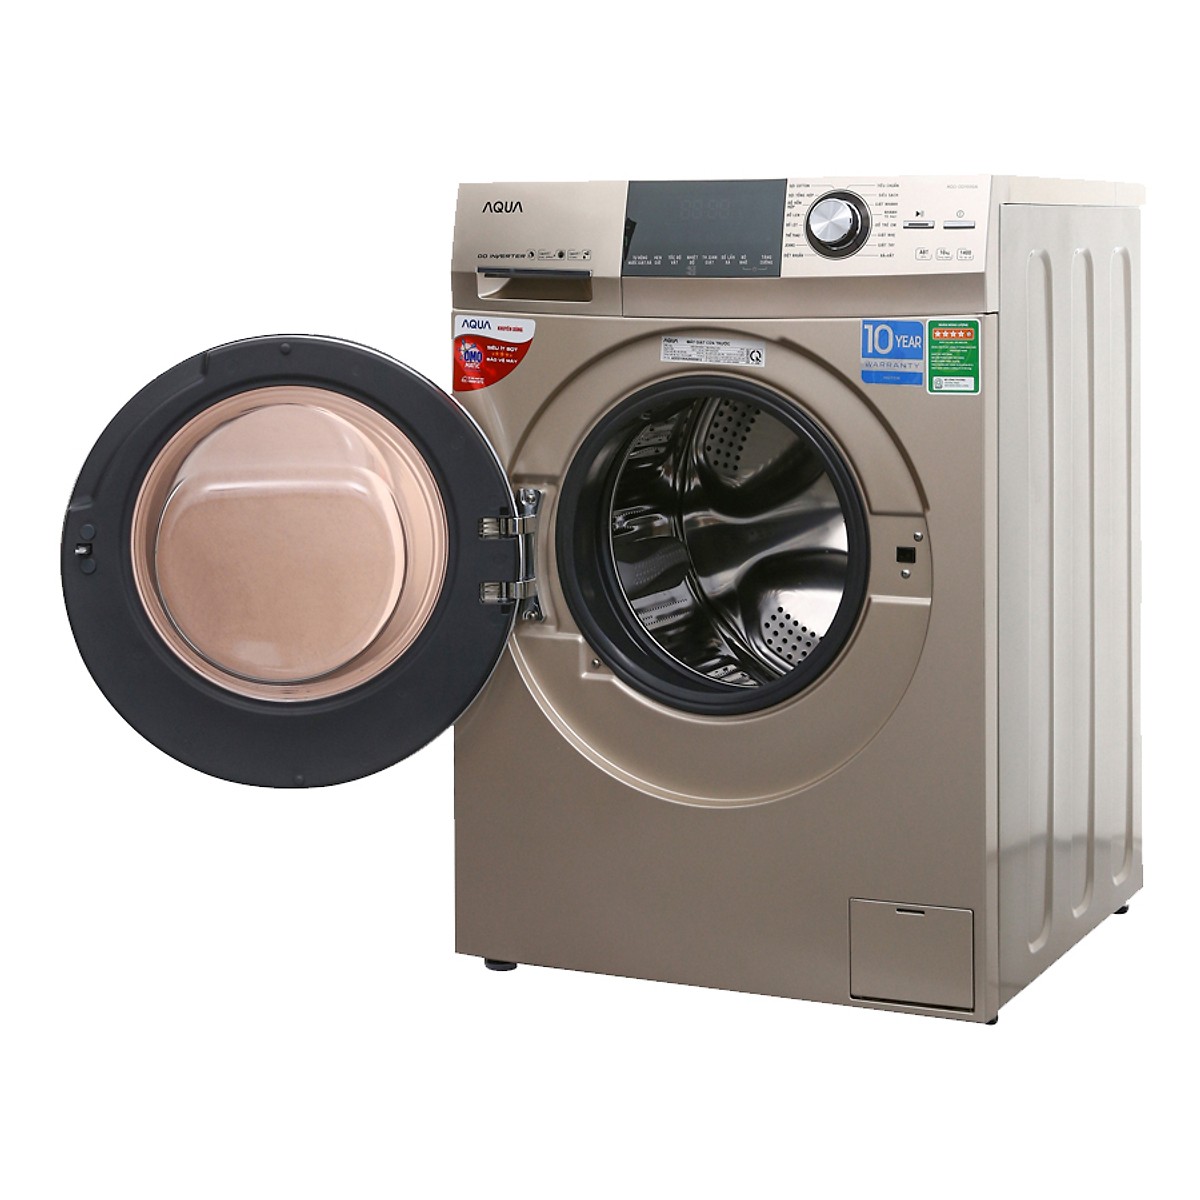 Máy giặt Aqua Inverter 10 kg AQD-DD1000A (N2) - Hàng Chính Hãng + Tặng Bình Đun Siêu Tốc